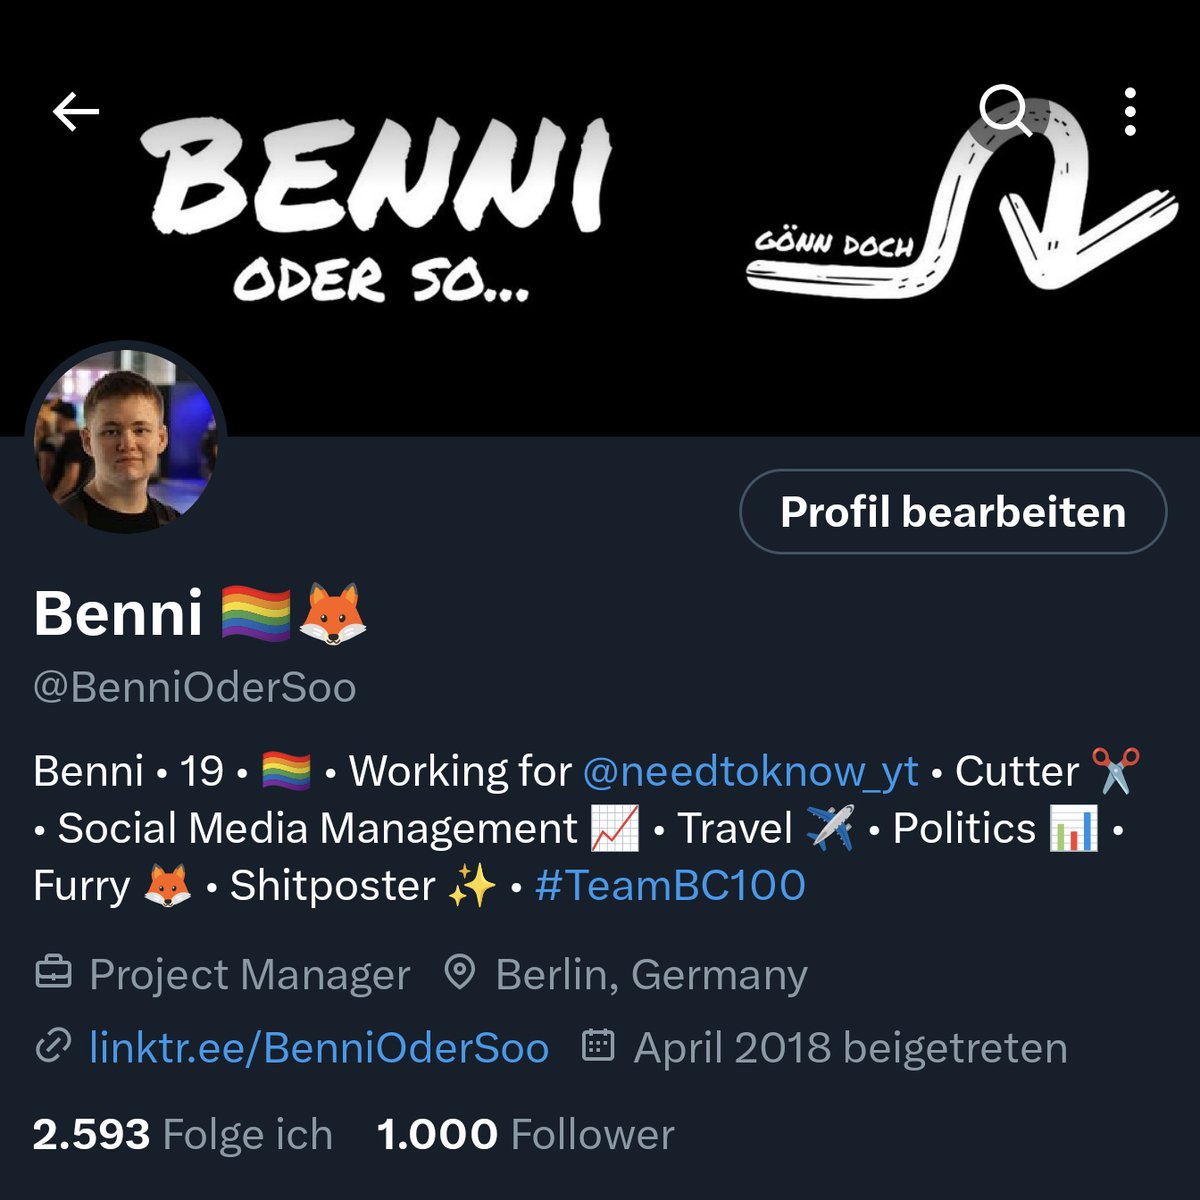 1.000 Follower! 🥹 Finally Großuser! 🔥 Vielen Dank für euren Support! ❤️